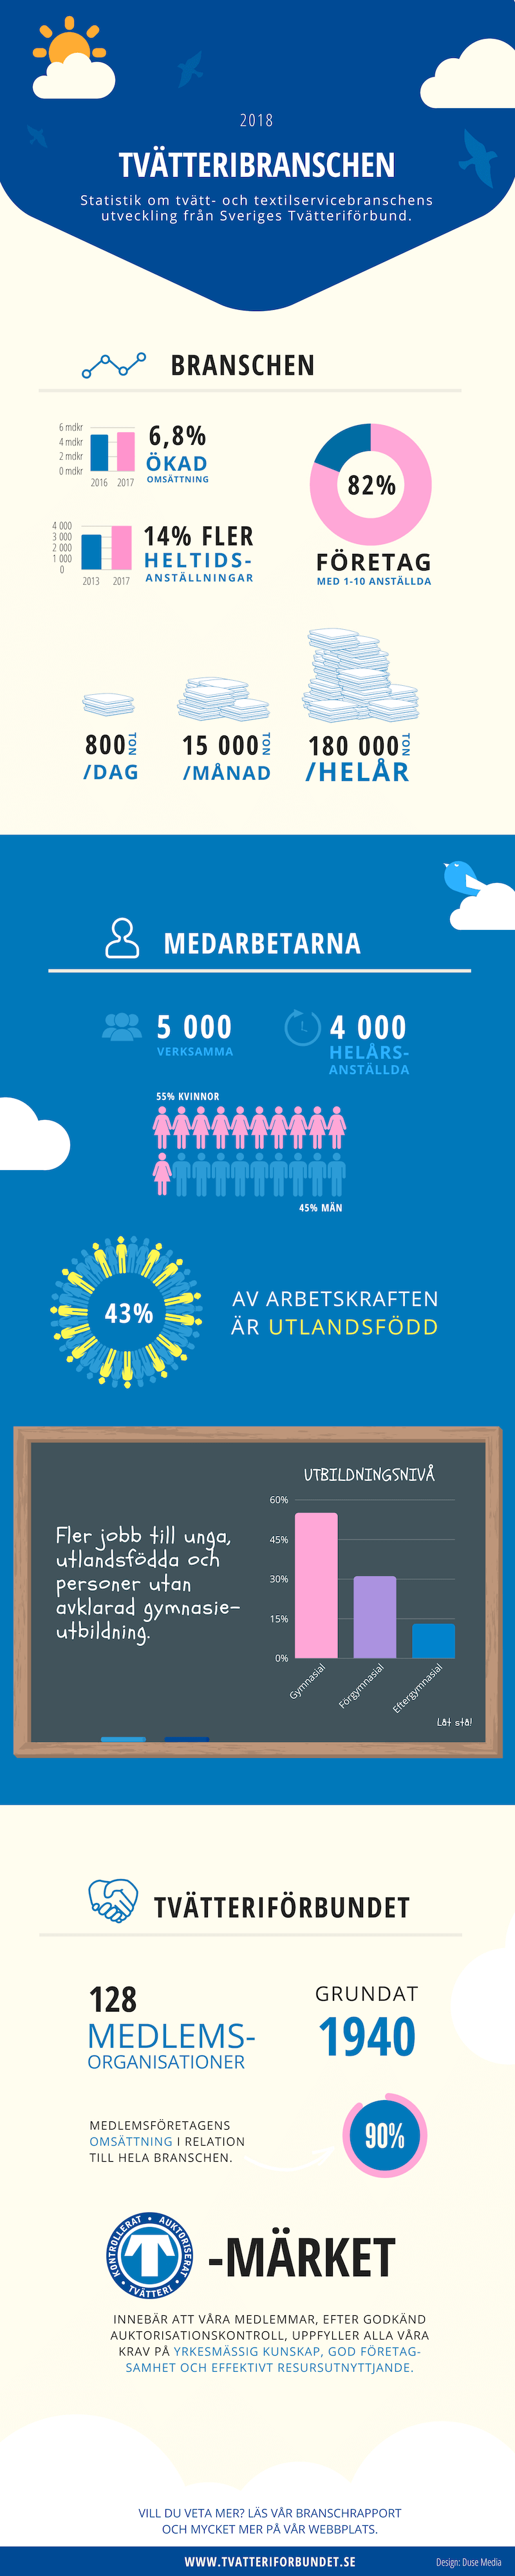 Infographic: Branschrapport 2018 – Sveriges Tvätteriförbund